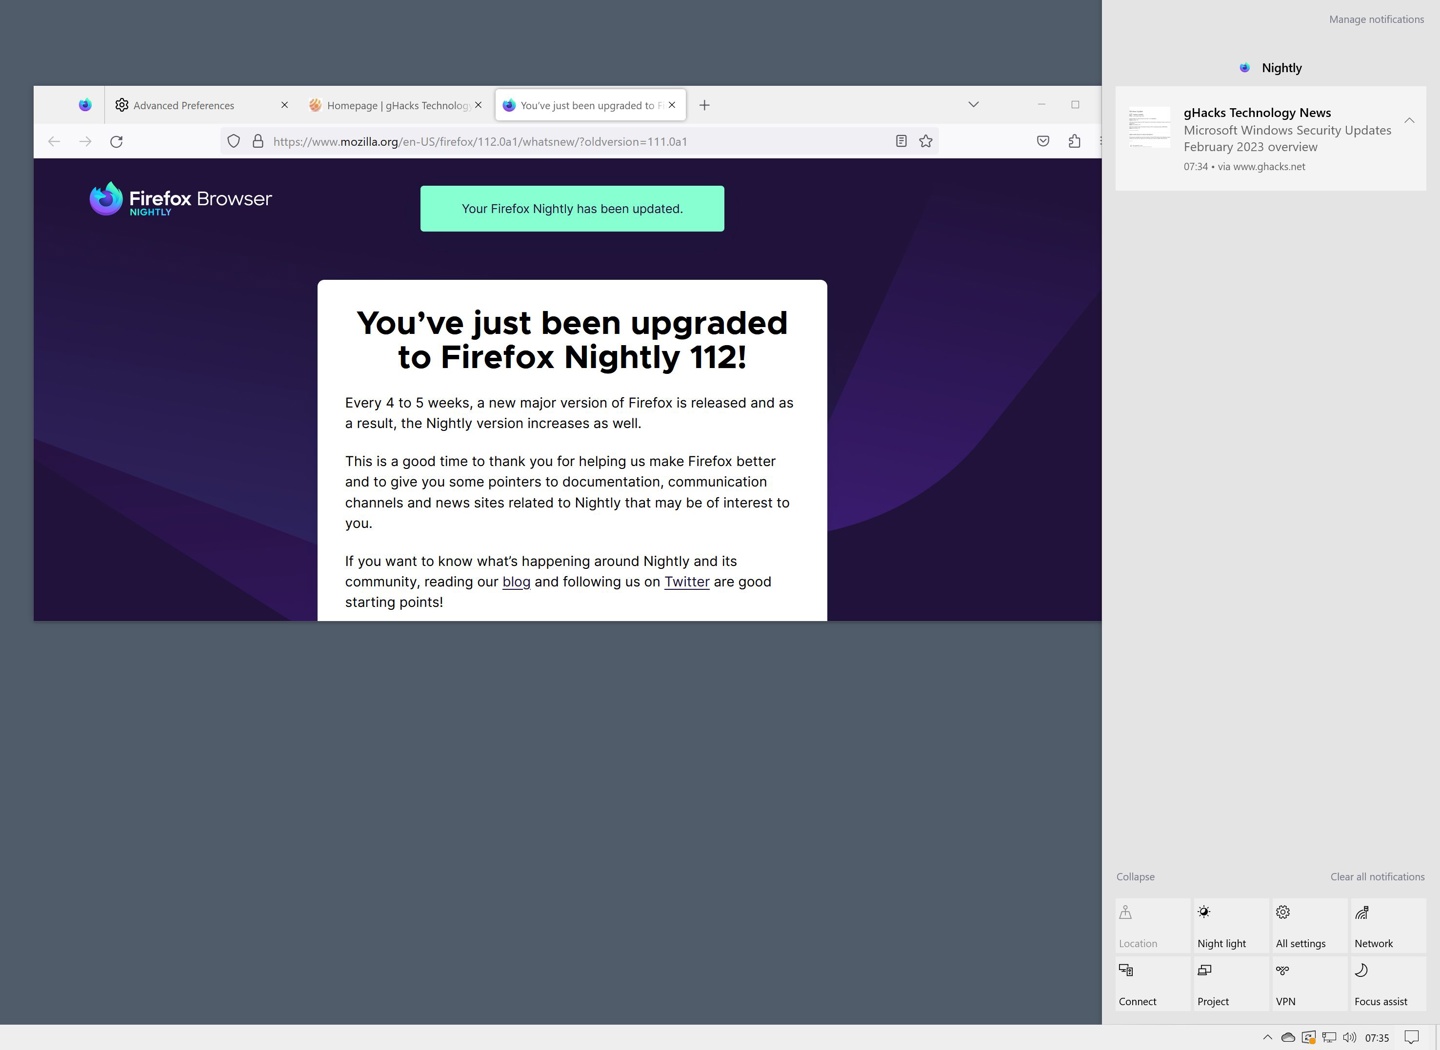 火狐浏览器 Firefox 发布 111.0 版本更